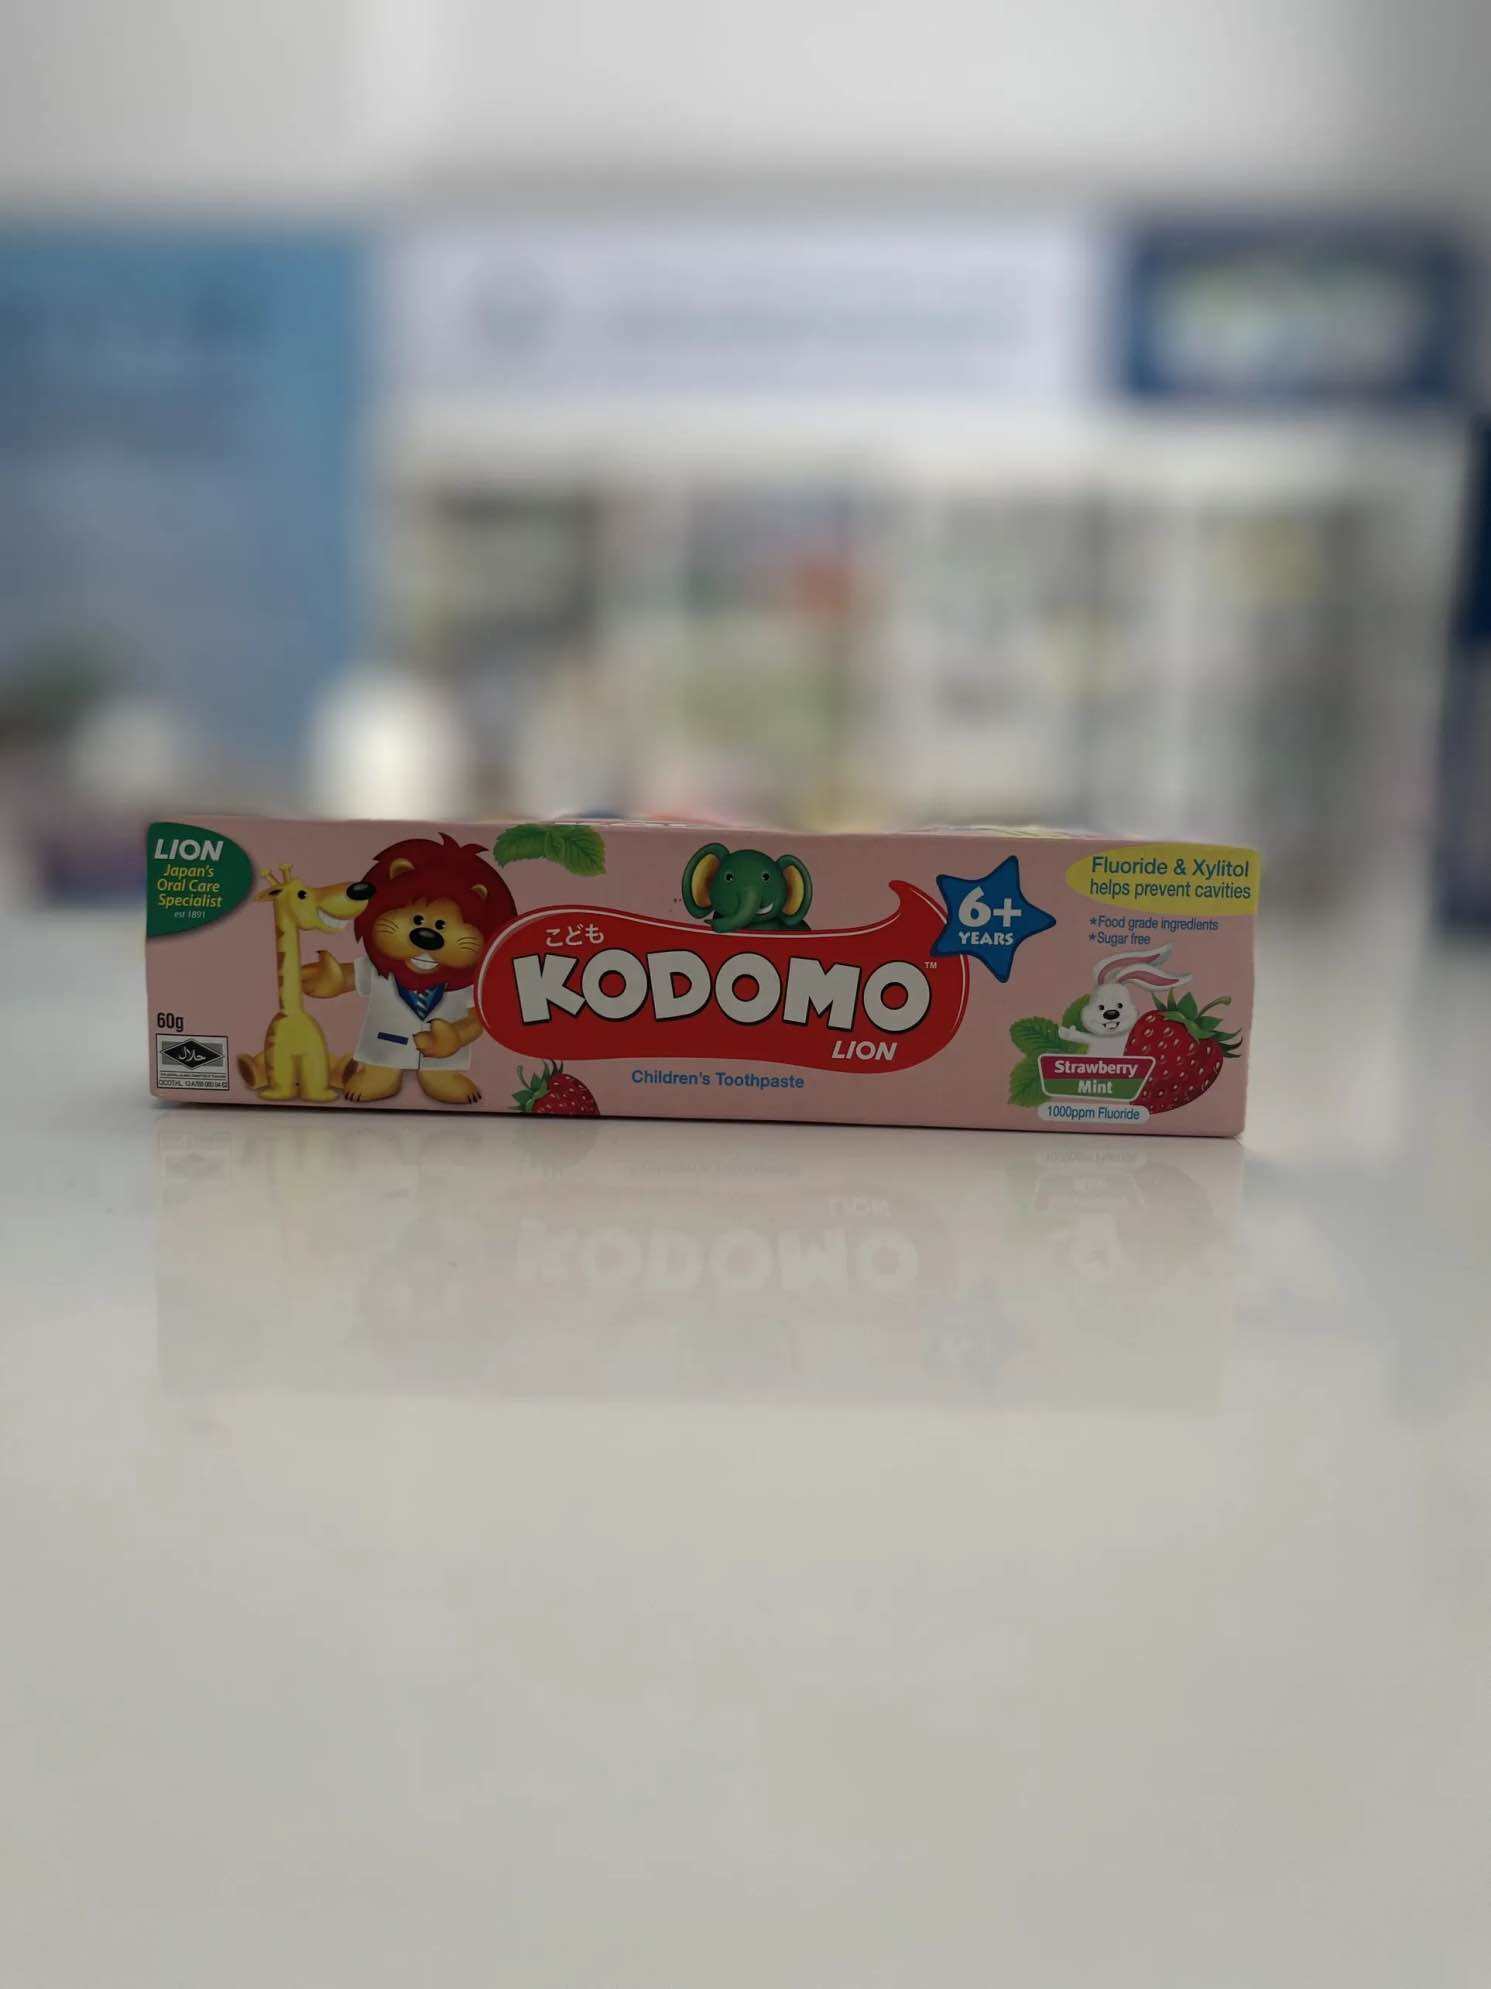 Kem đánh răng Kodomo cho trẻ từ 6 tuổi - Hương Dâu và Bạc hà